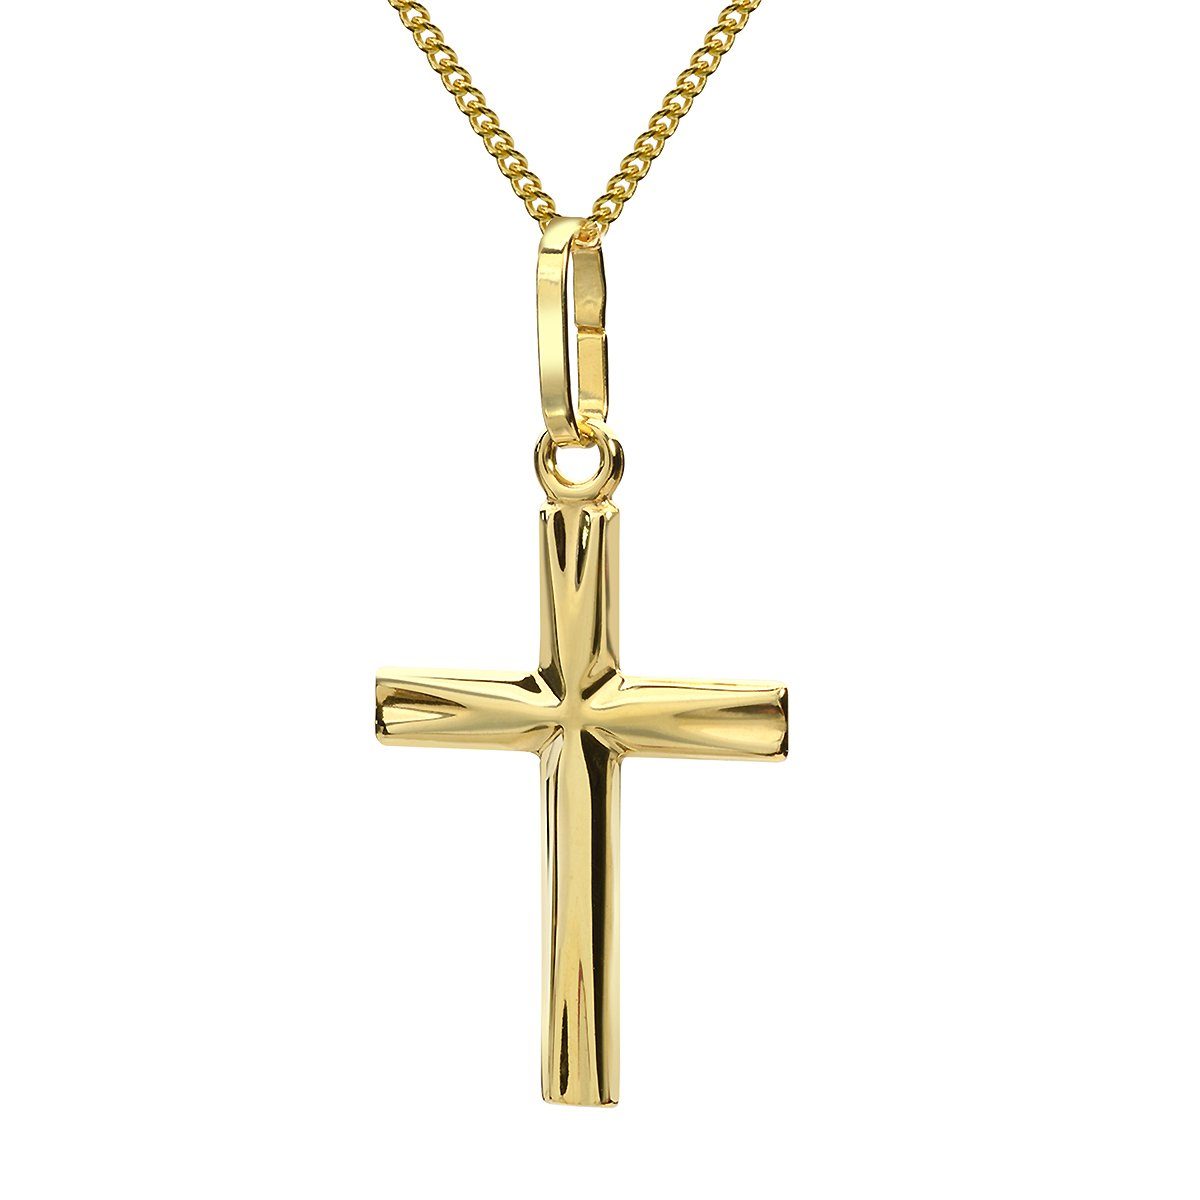 Materia Kreuzkette Kreuz Anhänger mit Halskette GKA-2, aus 375 Echtgold